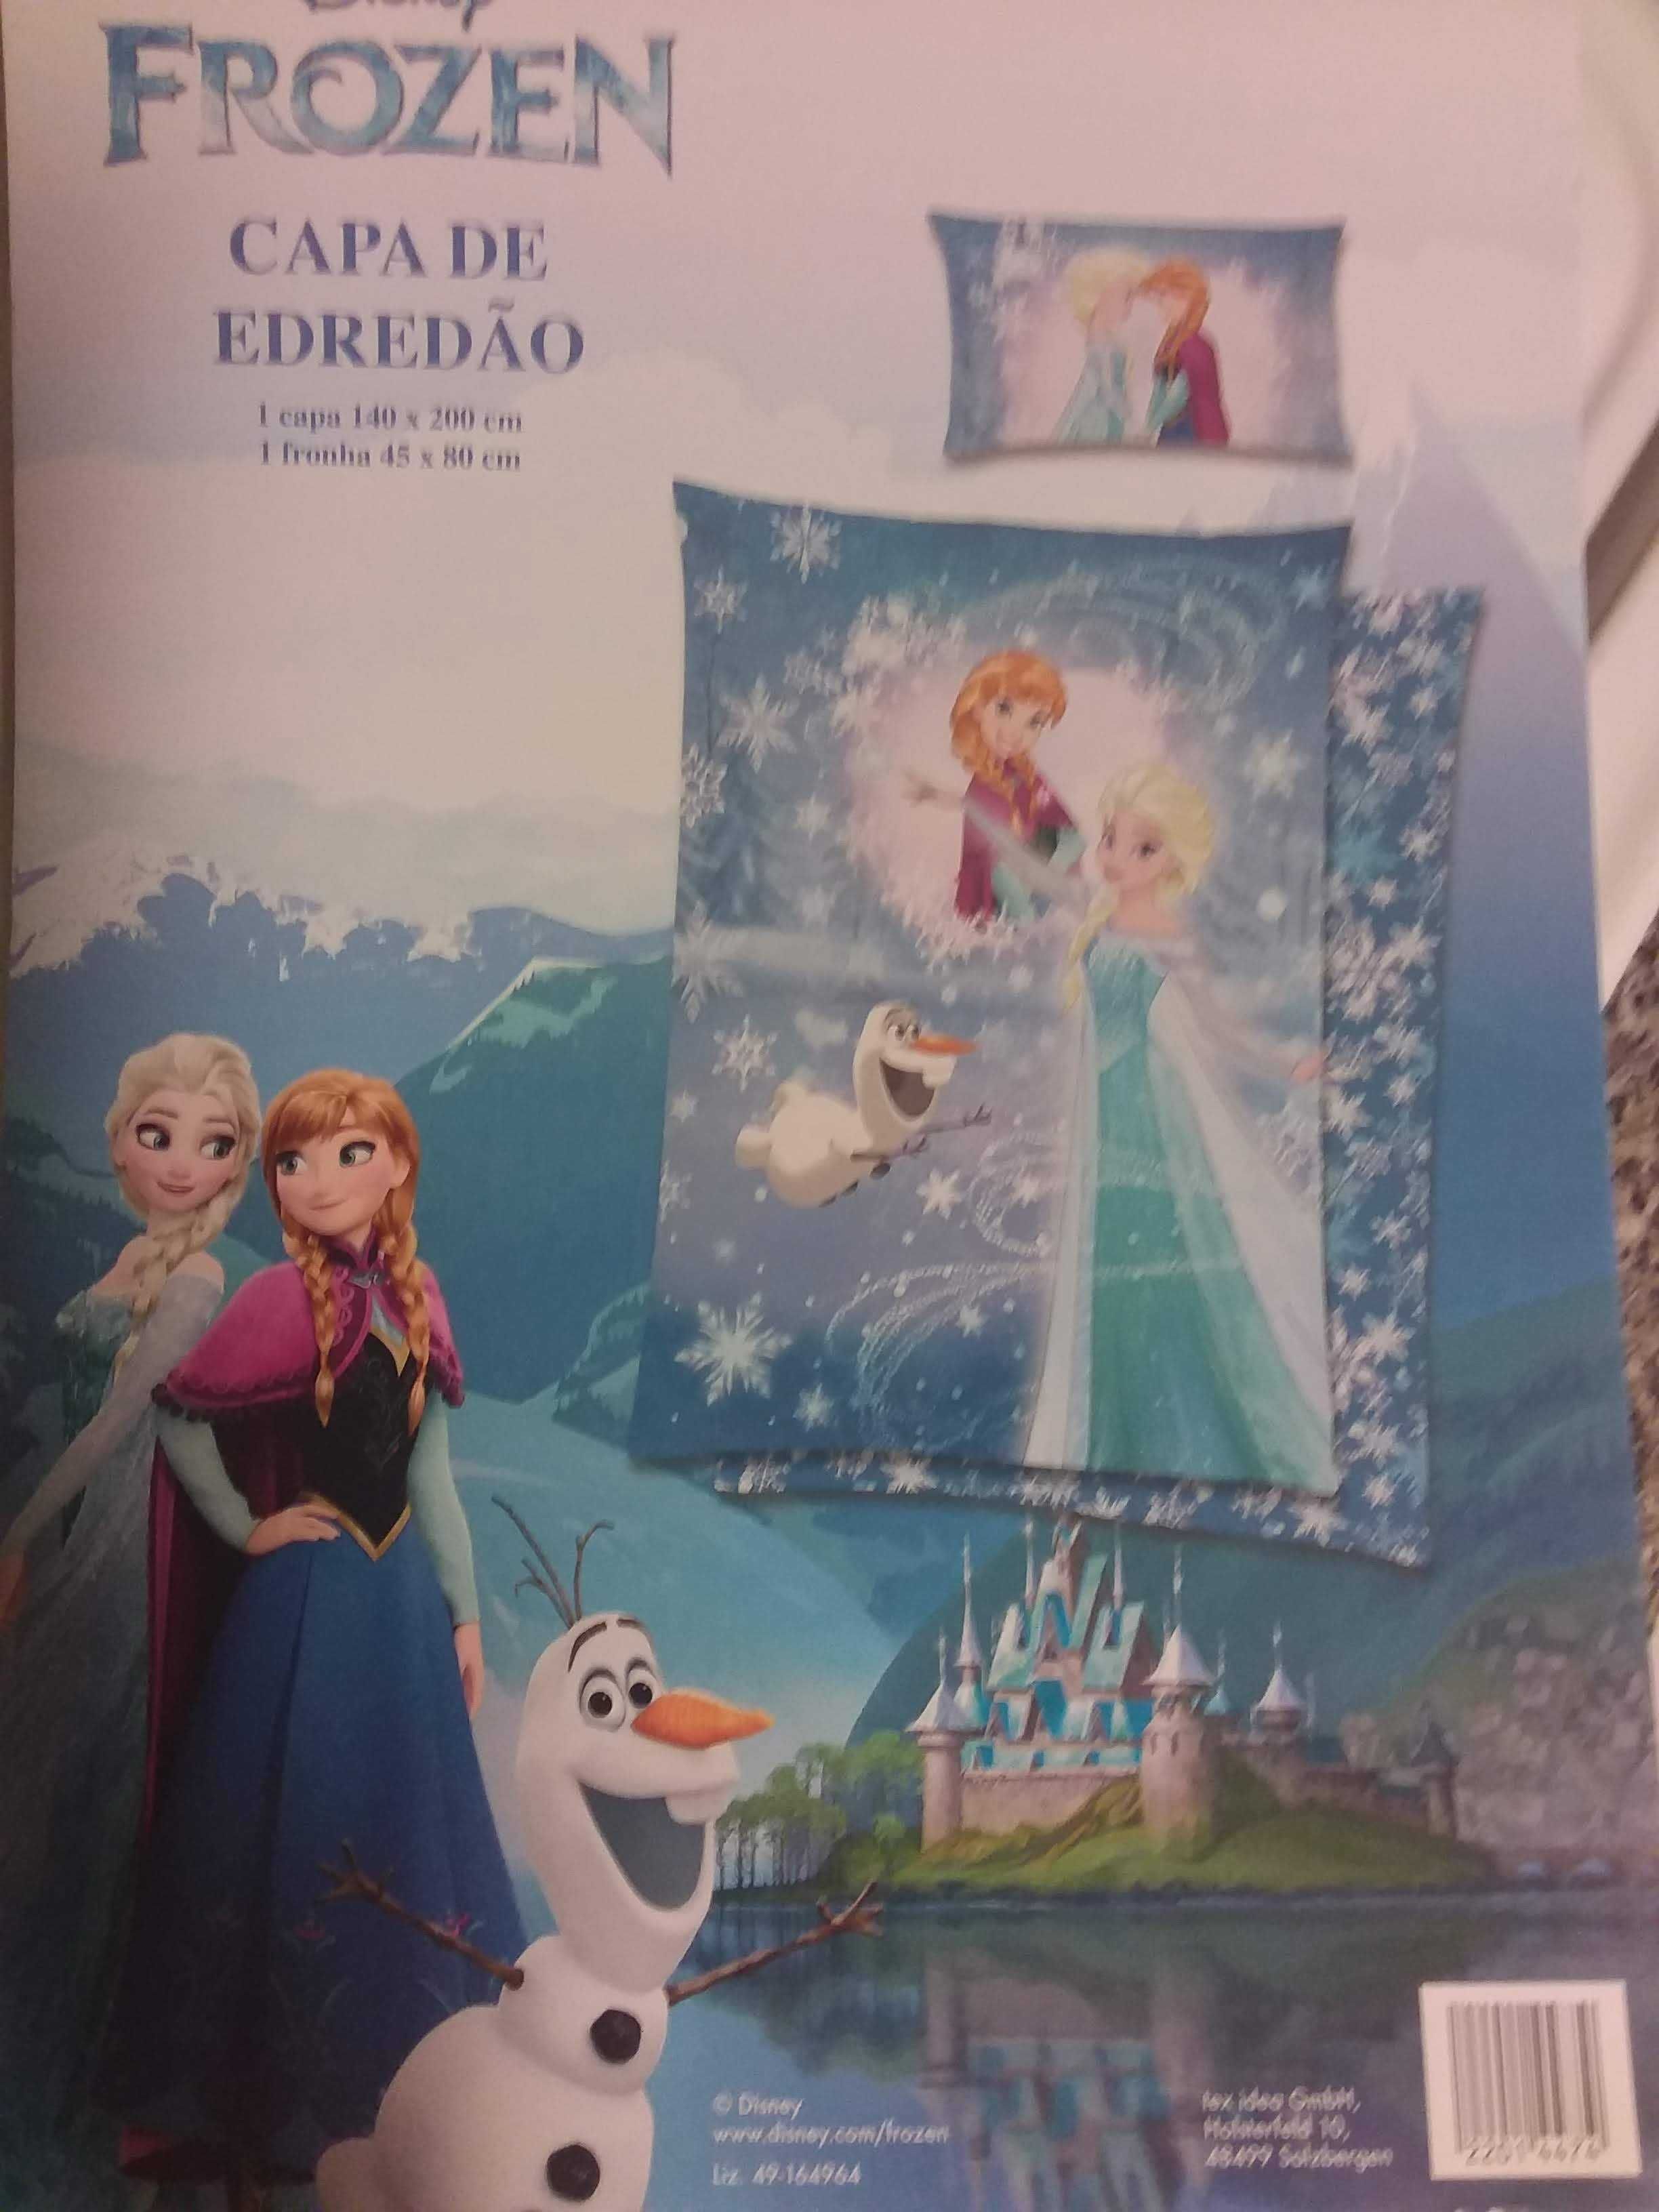 Capa de edredom, tema Frozen da Disney